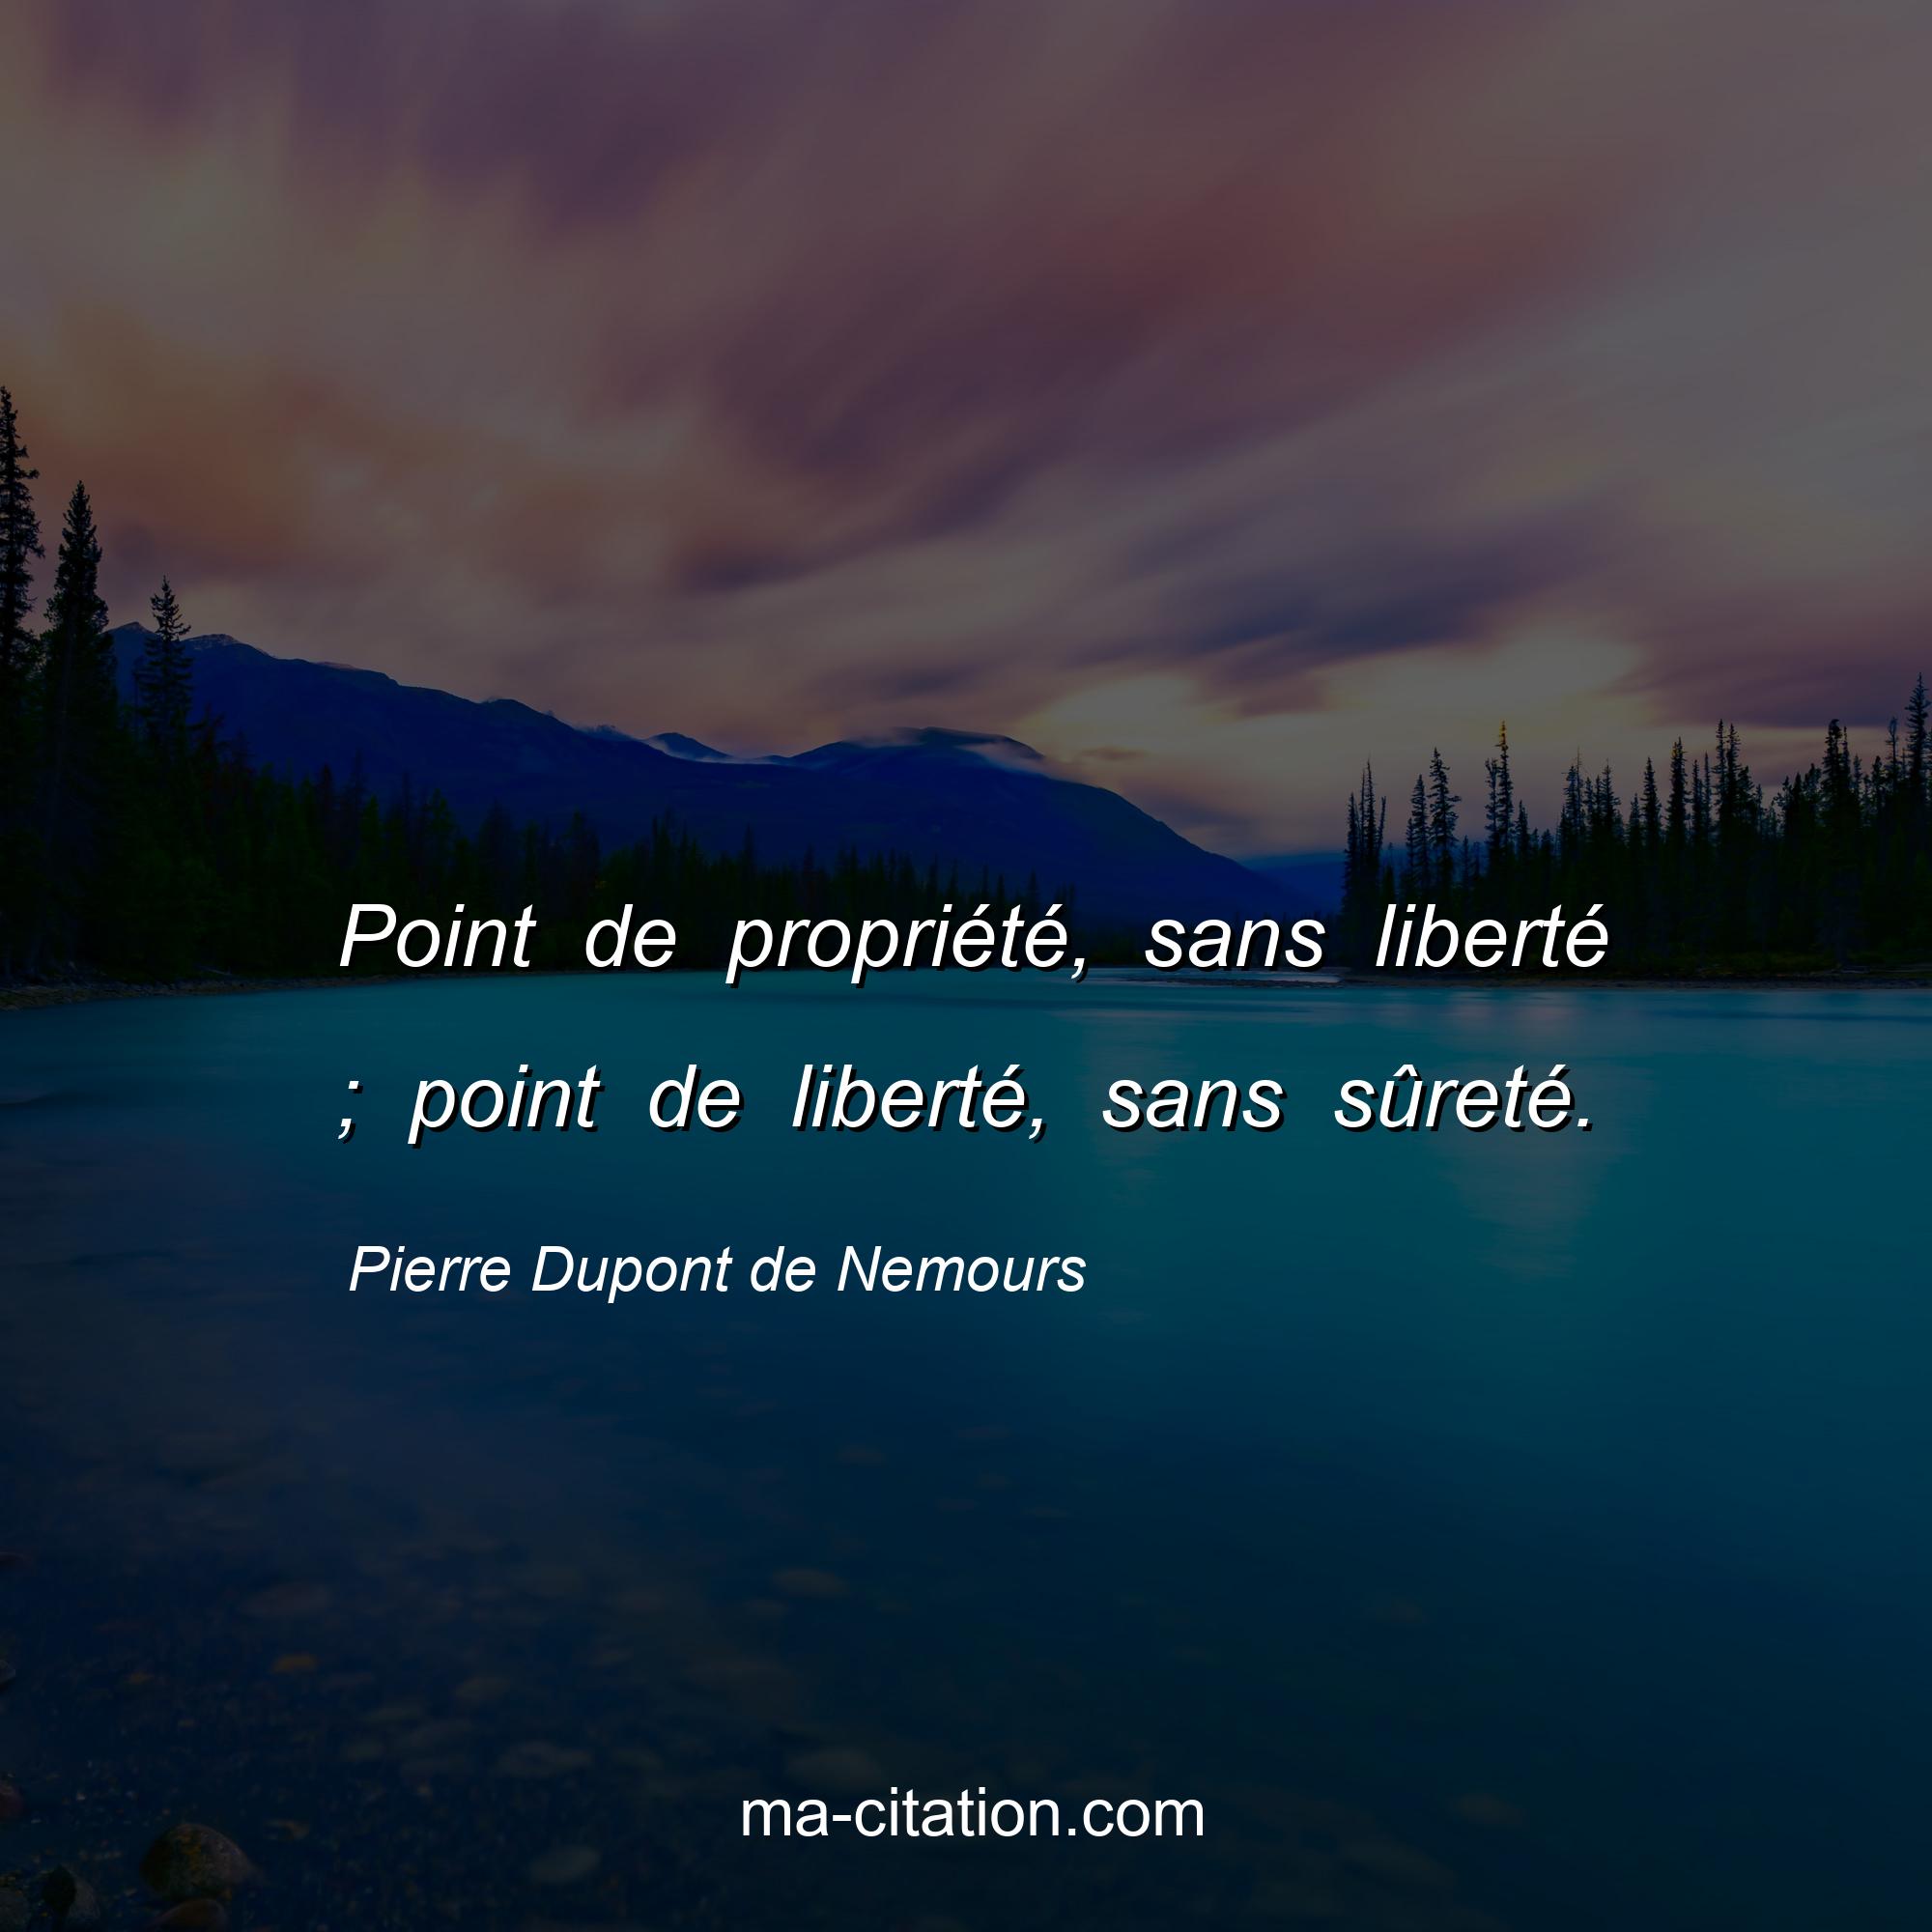 Pierre Dupont de Nemours : Point de propriété, sans liberté ; point de liberté, sans sûreté.